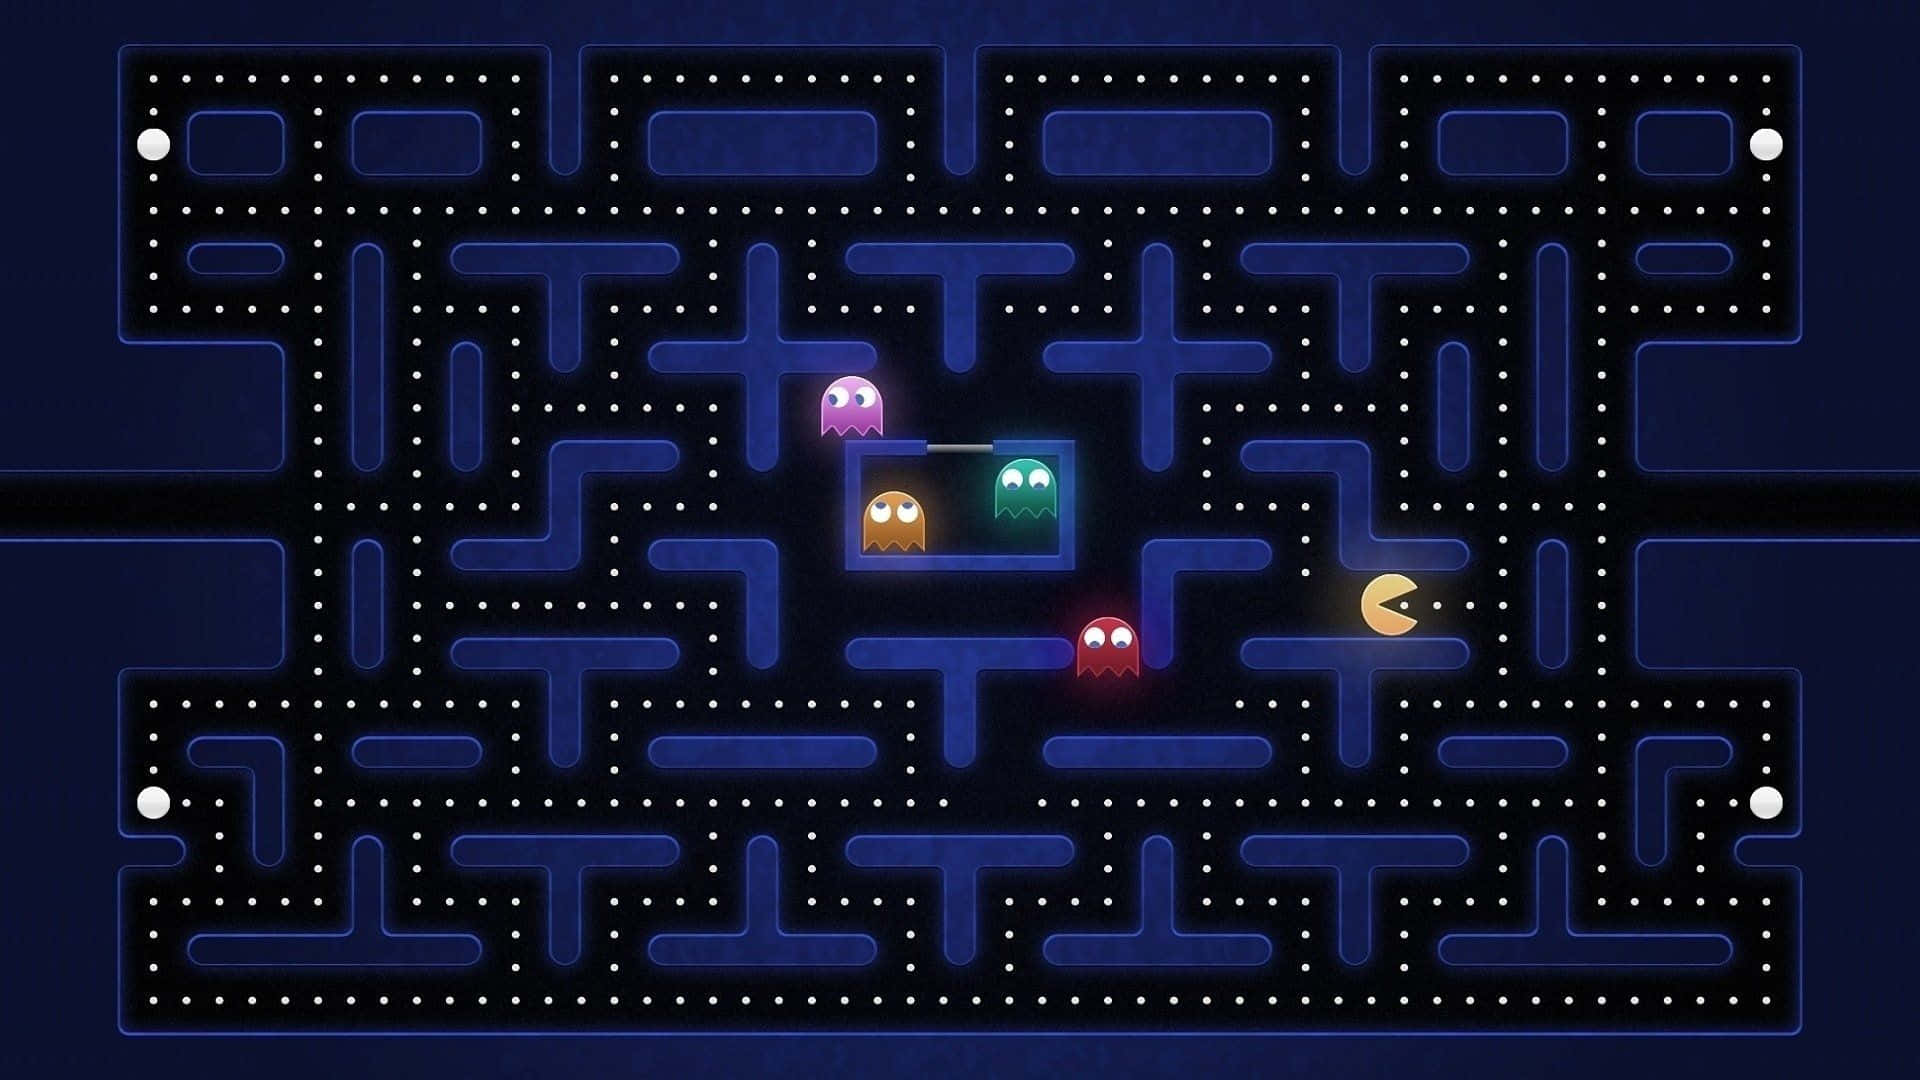 Forderemit Deinen Pacman-fähigkeiten Reale Geister Heraus!